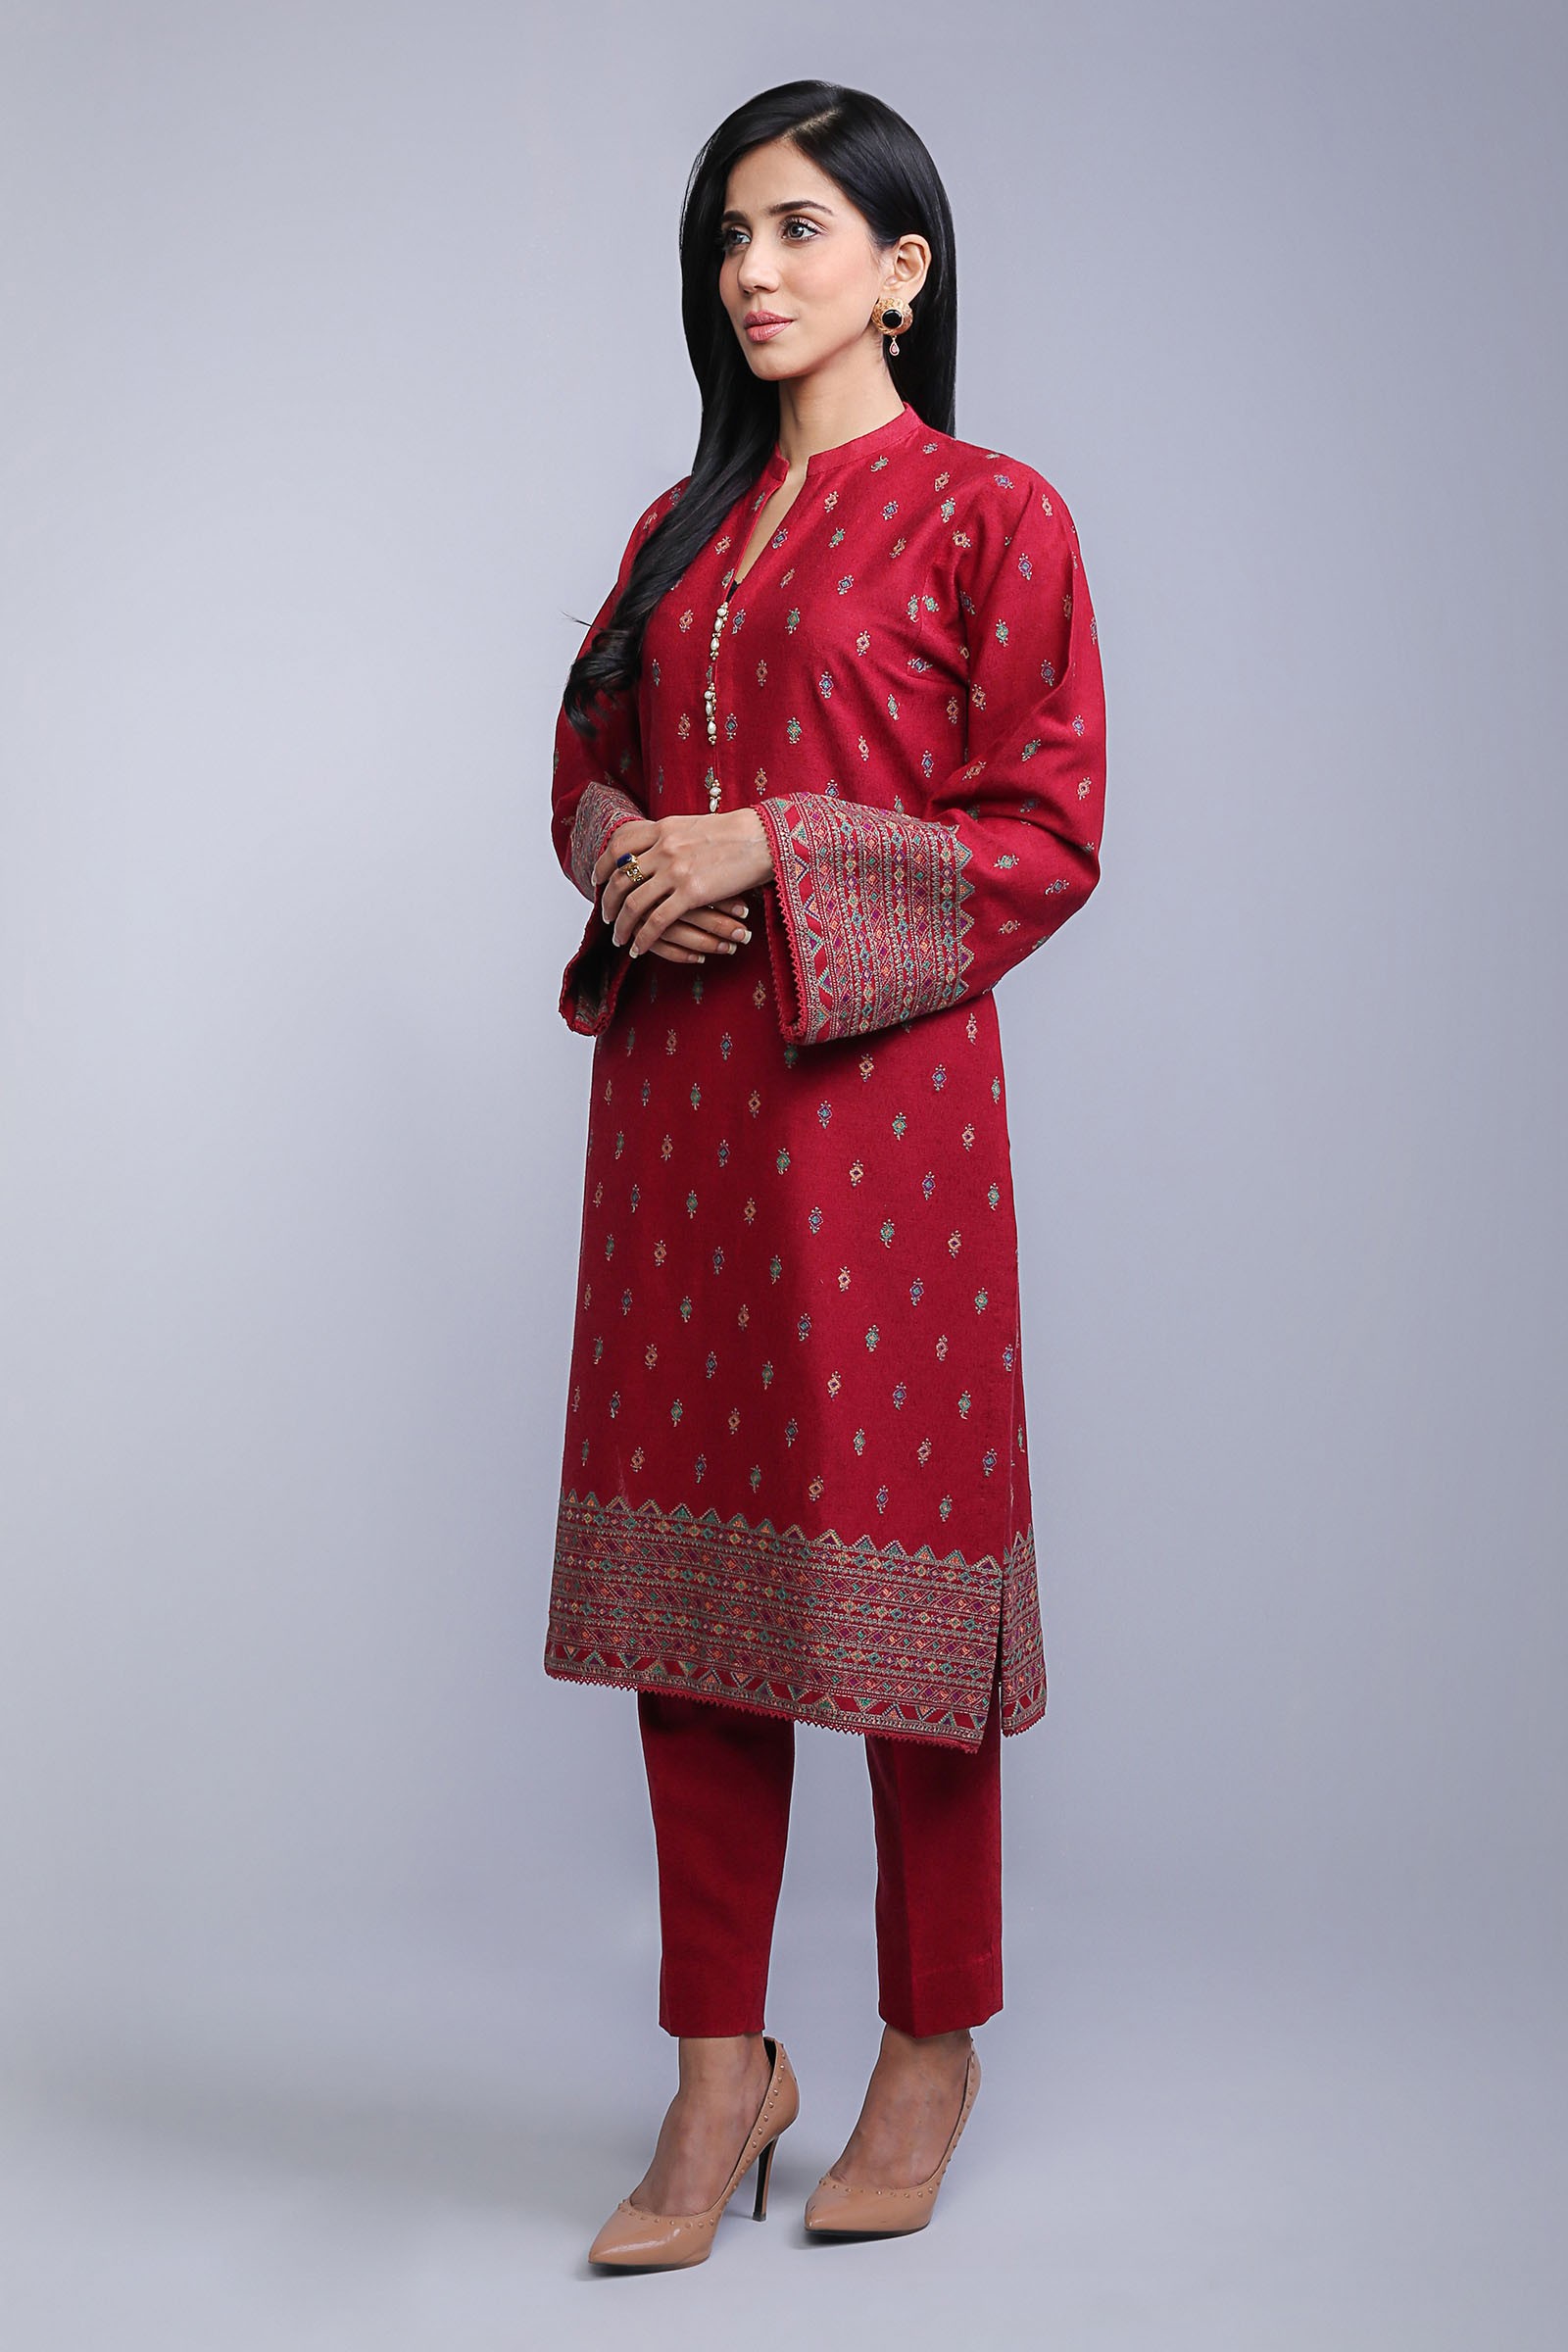 Ravishing red cotton karandi 3 piece stitched dress by Bareeze semi formal collection 2018Ravishing red cotton karandi 3 piece stitched dress by Bareeze semi formal collection 2019